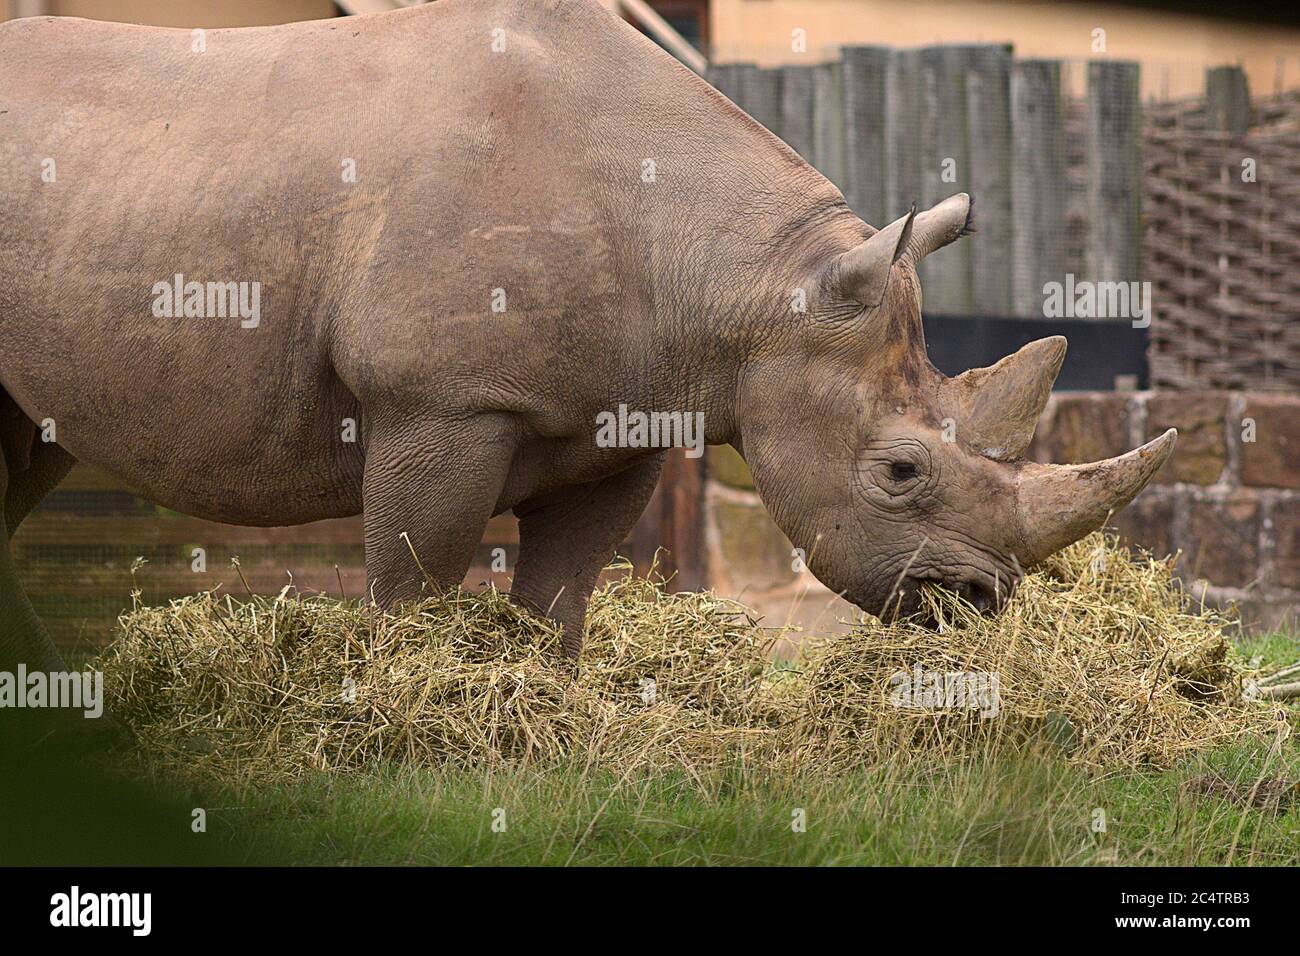 Un grand rhinocéros noir féminin au zoo de Chester, dans le nord-ouest de l'Angleterre. Espèce en danger critique d'extinction, en grande partie à cause des prédateurs et des braconniers. Banque D'Images